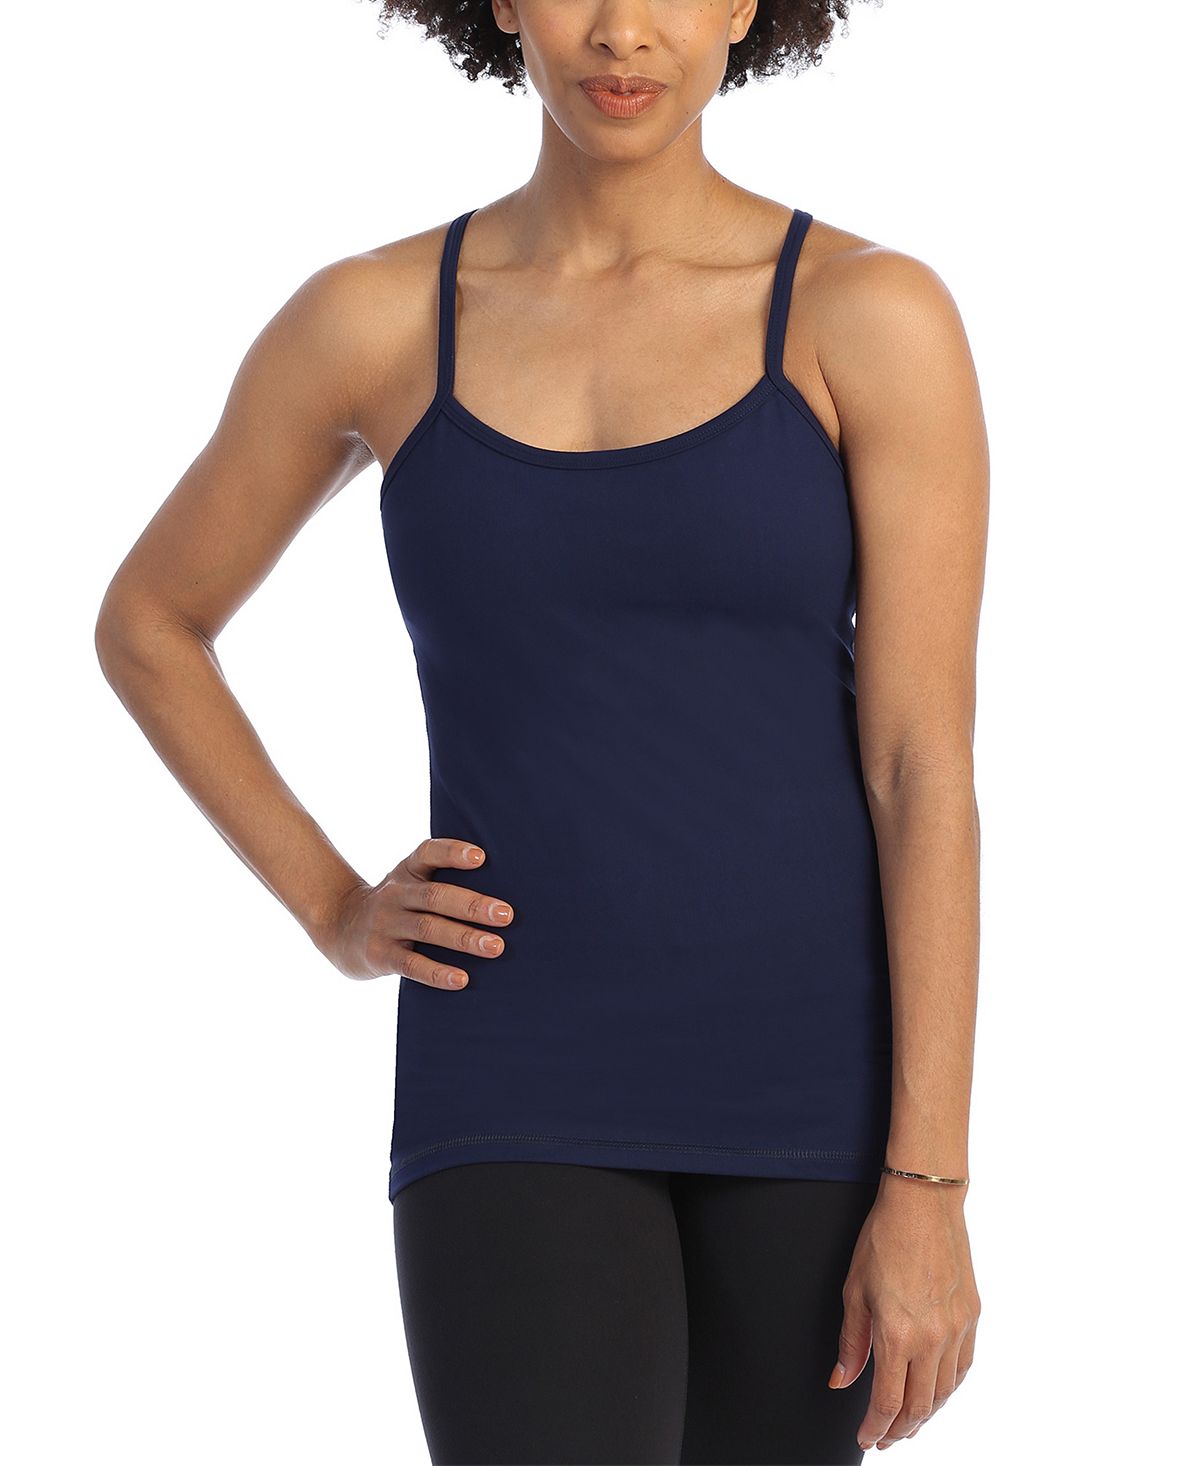 Женский топ для тренировок со встроенным бюстгальтером Racerback Y American Fitness Couture, темно-синий